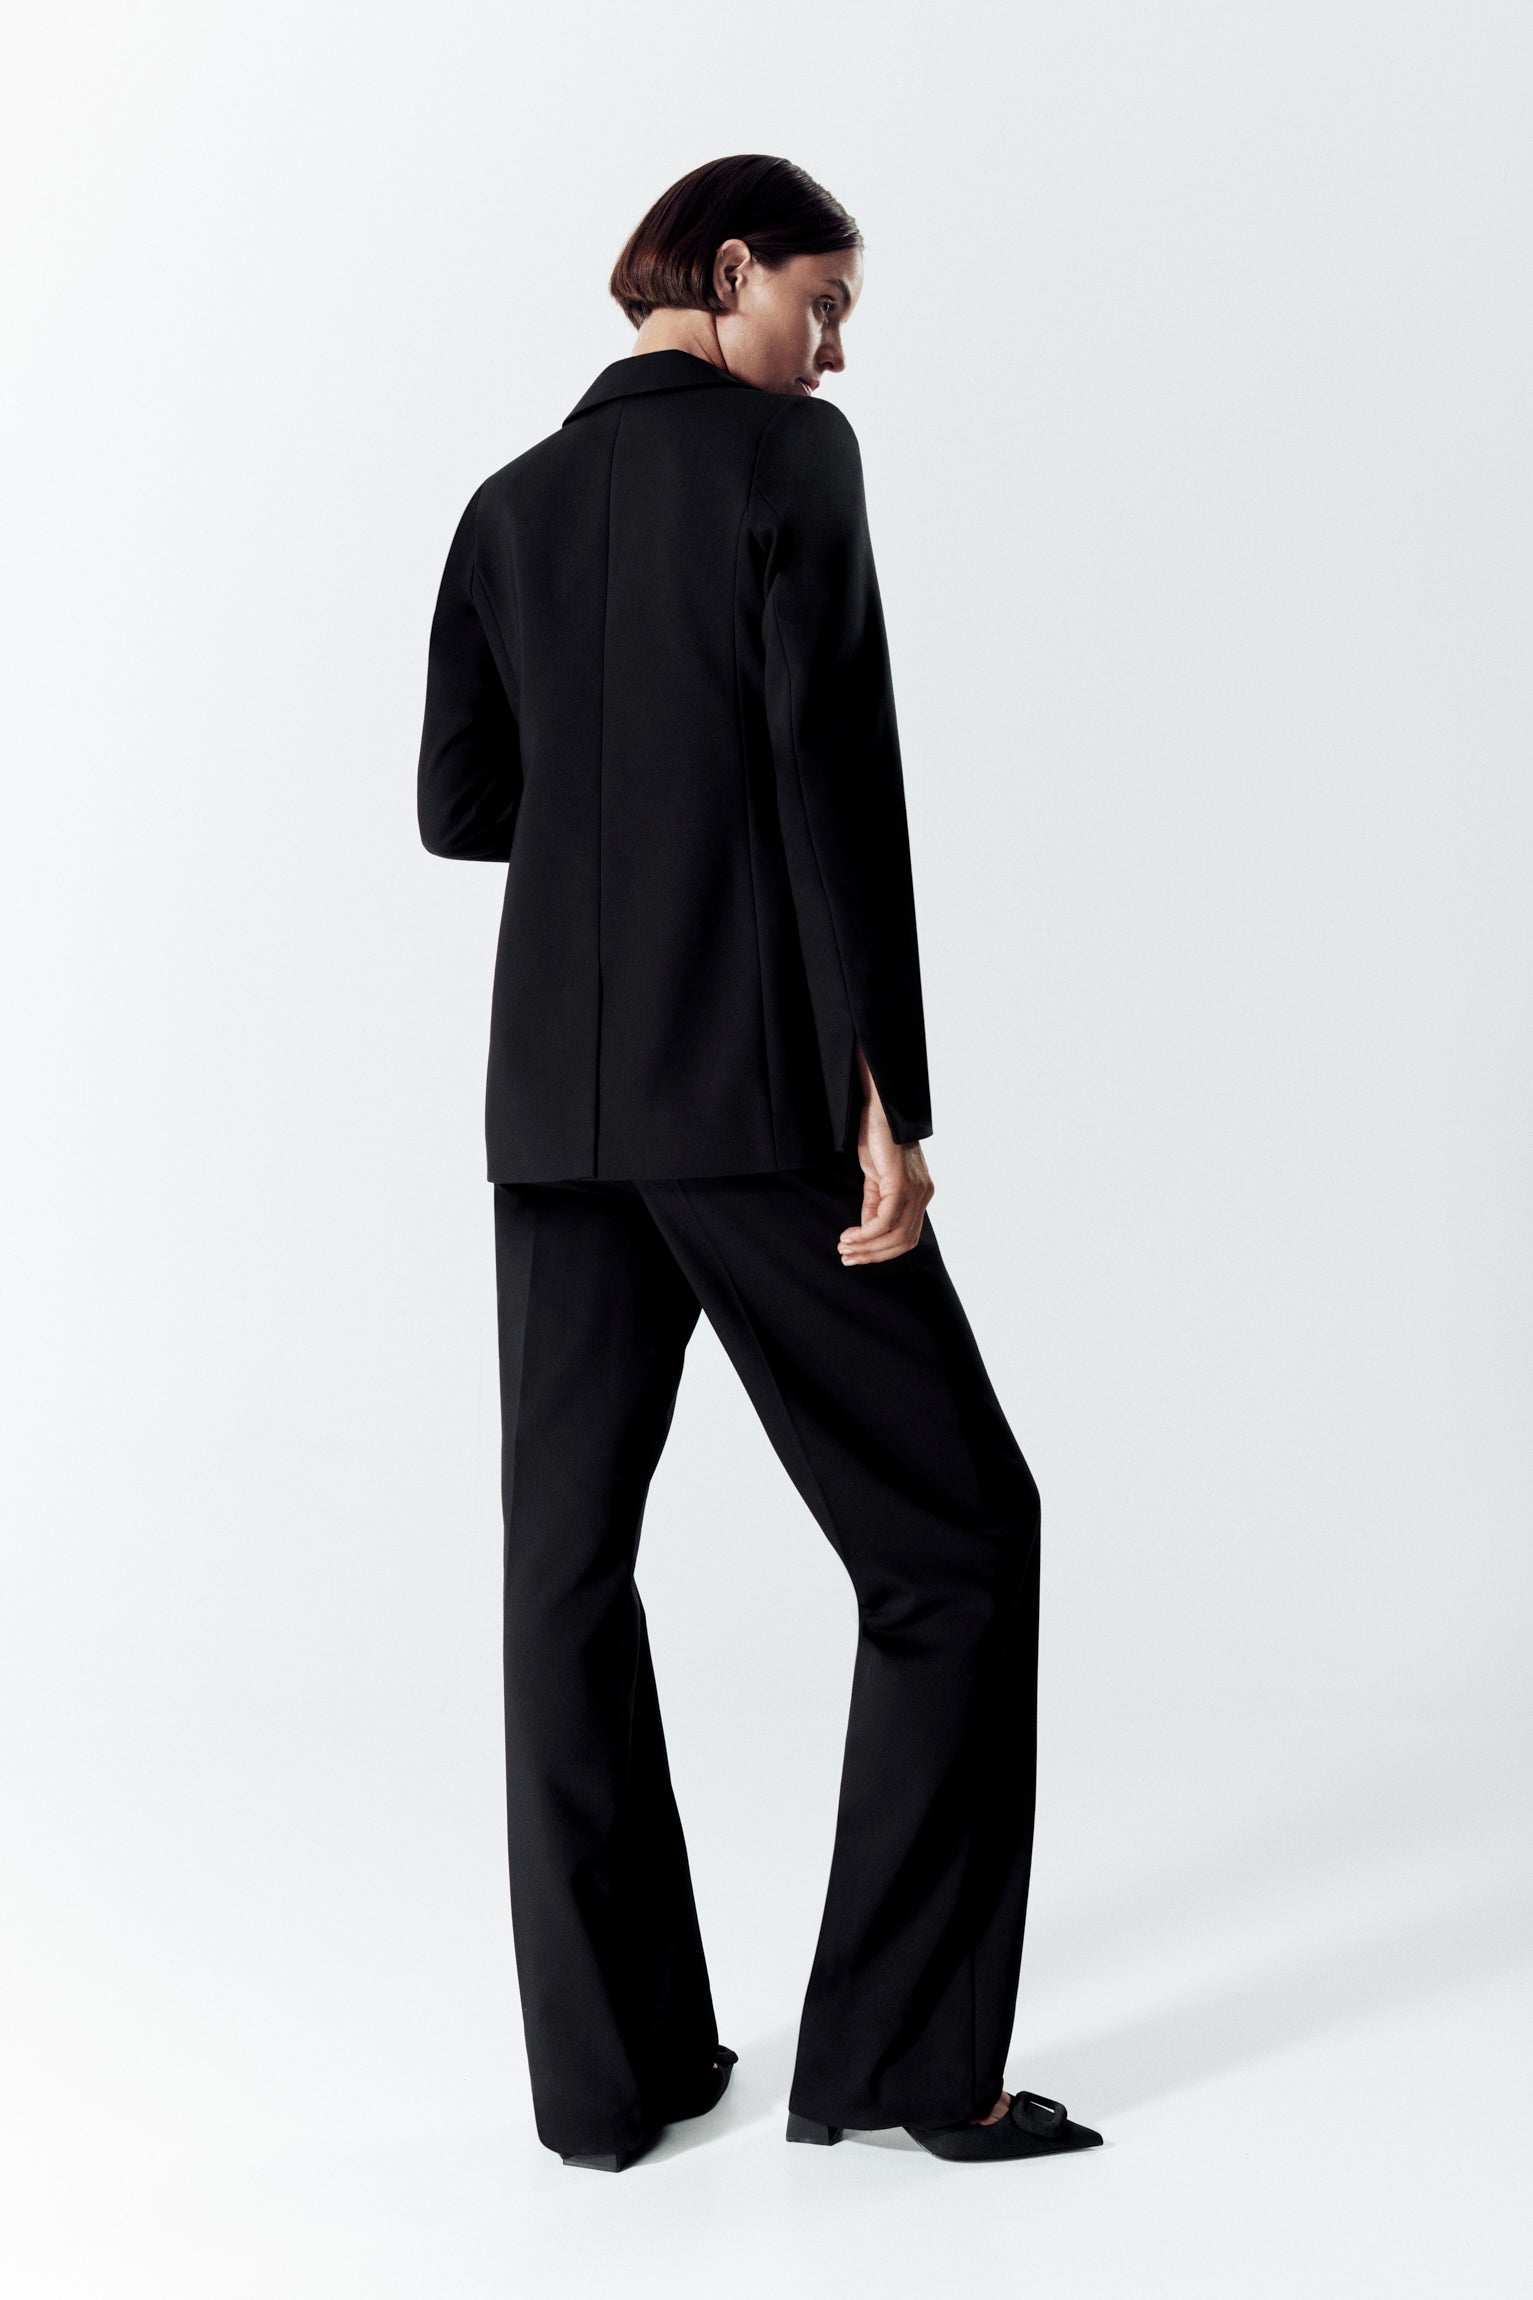 Marie-Jo BLACK Suit